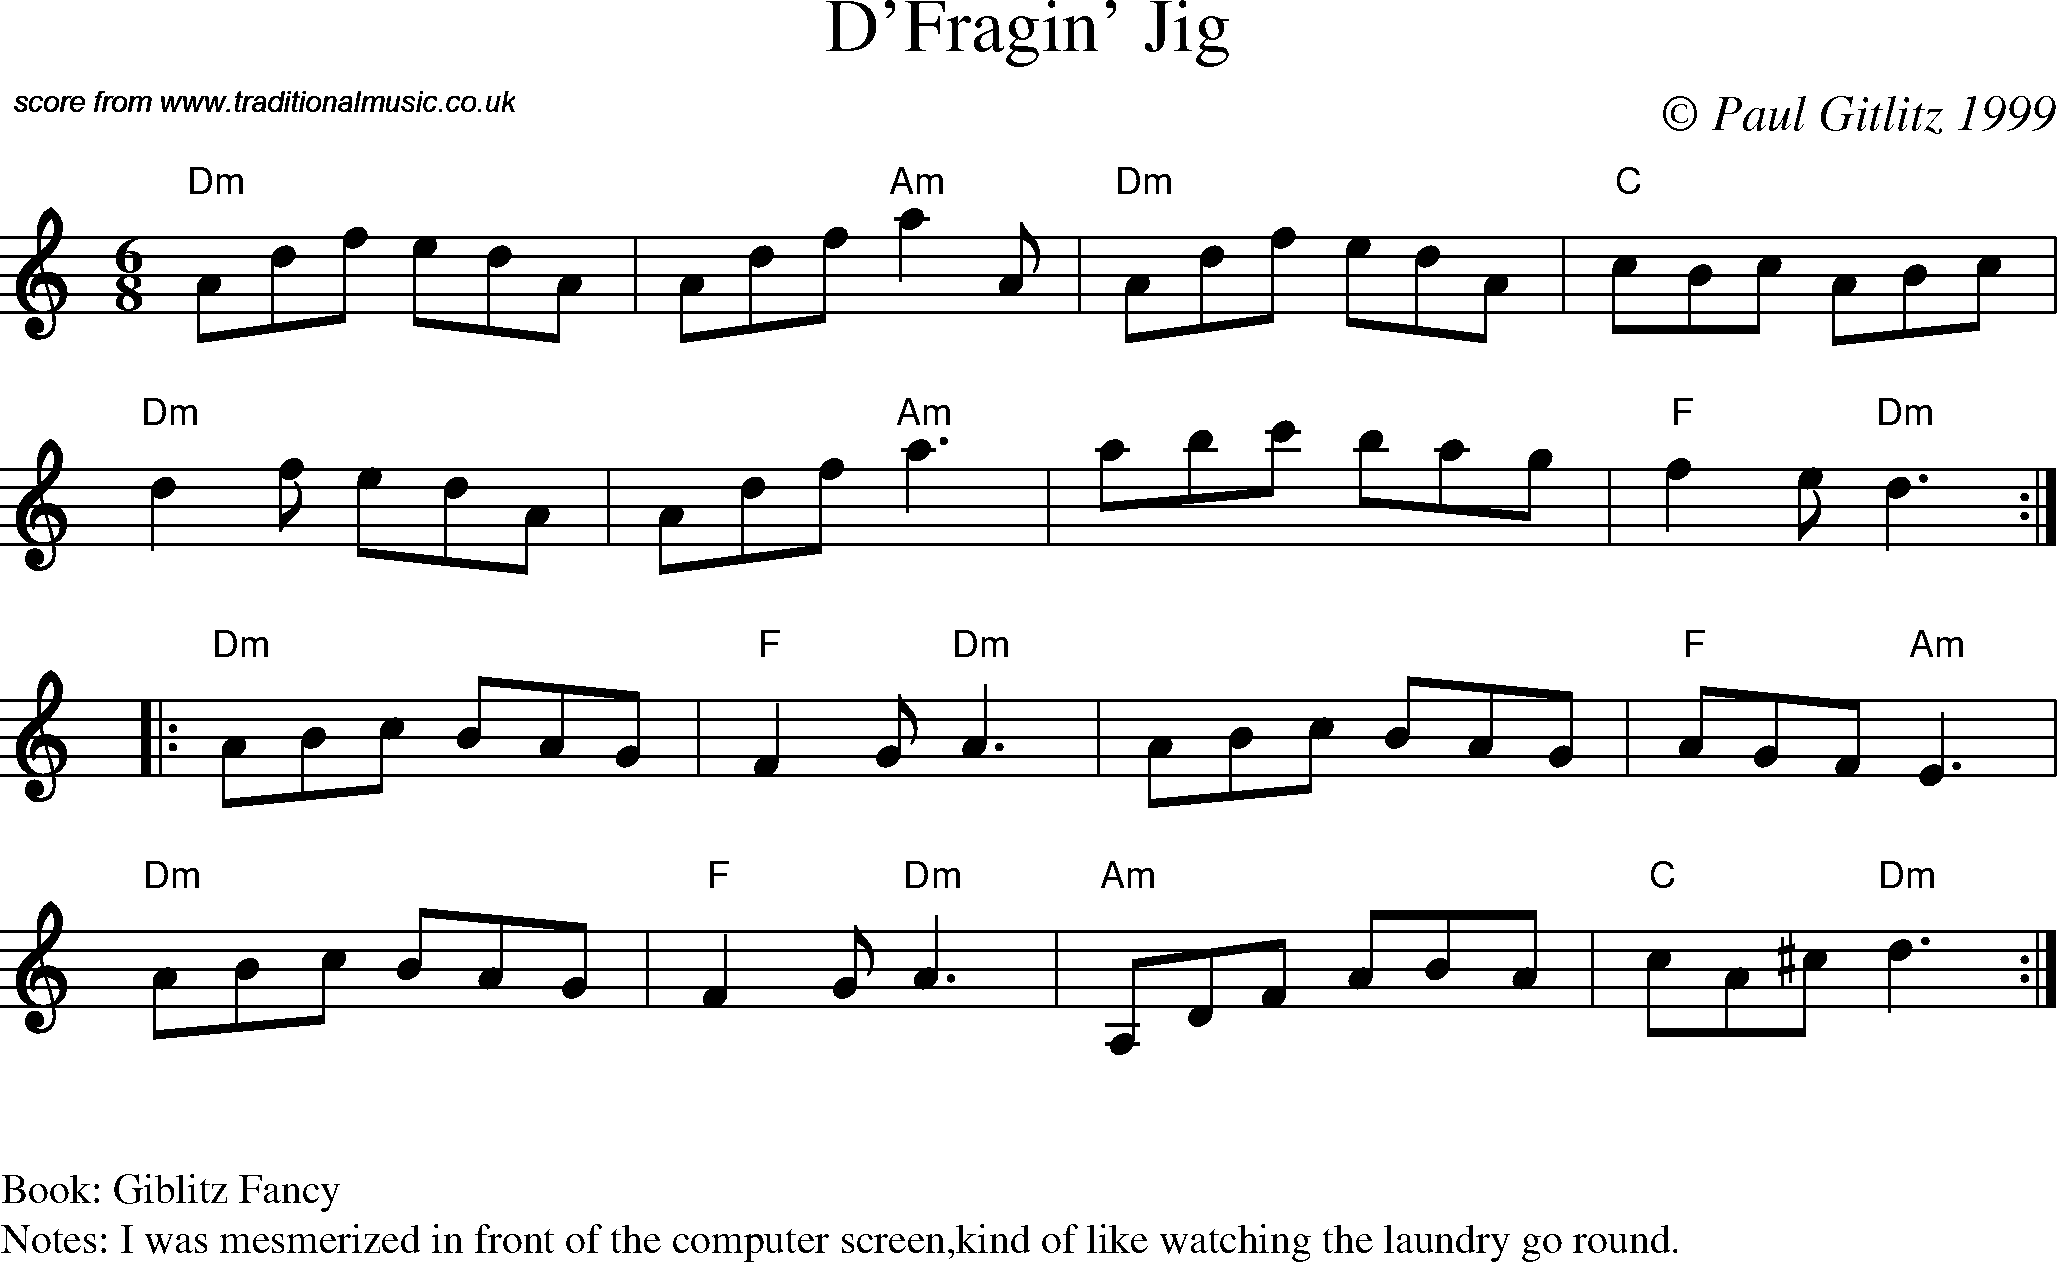 Sheet Music Score for Jig - D'Fragin' Jig